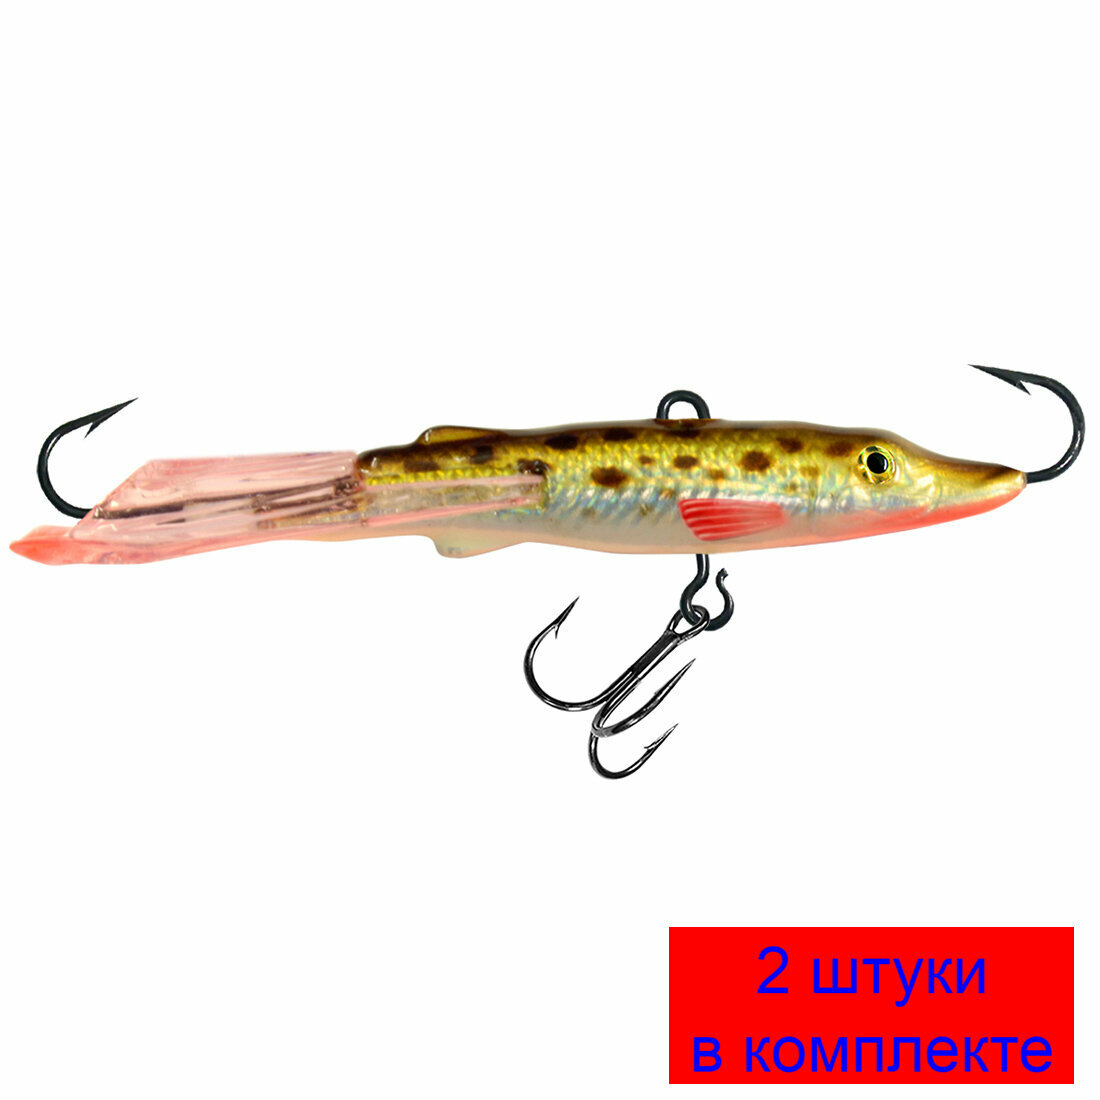 Балансир для рыбалки AQUA ЩУКА-7 74mm цвет 120 (золотисто-коричневый), 2 штуки